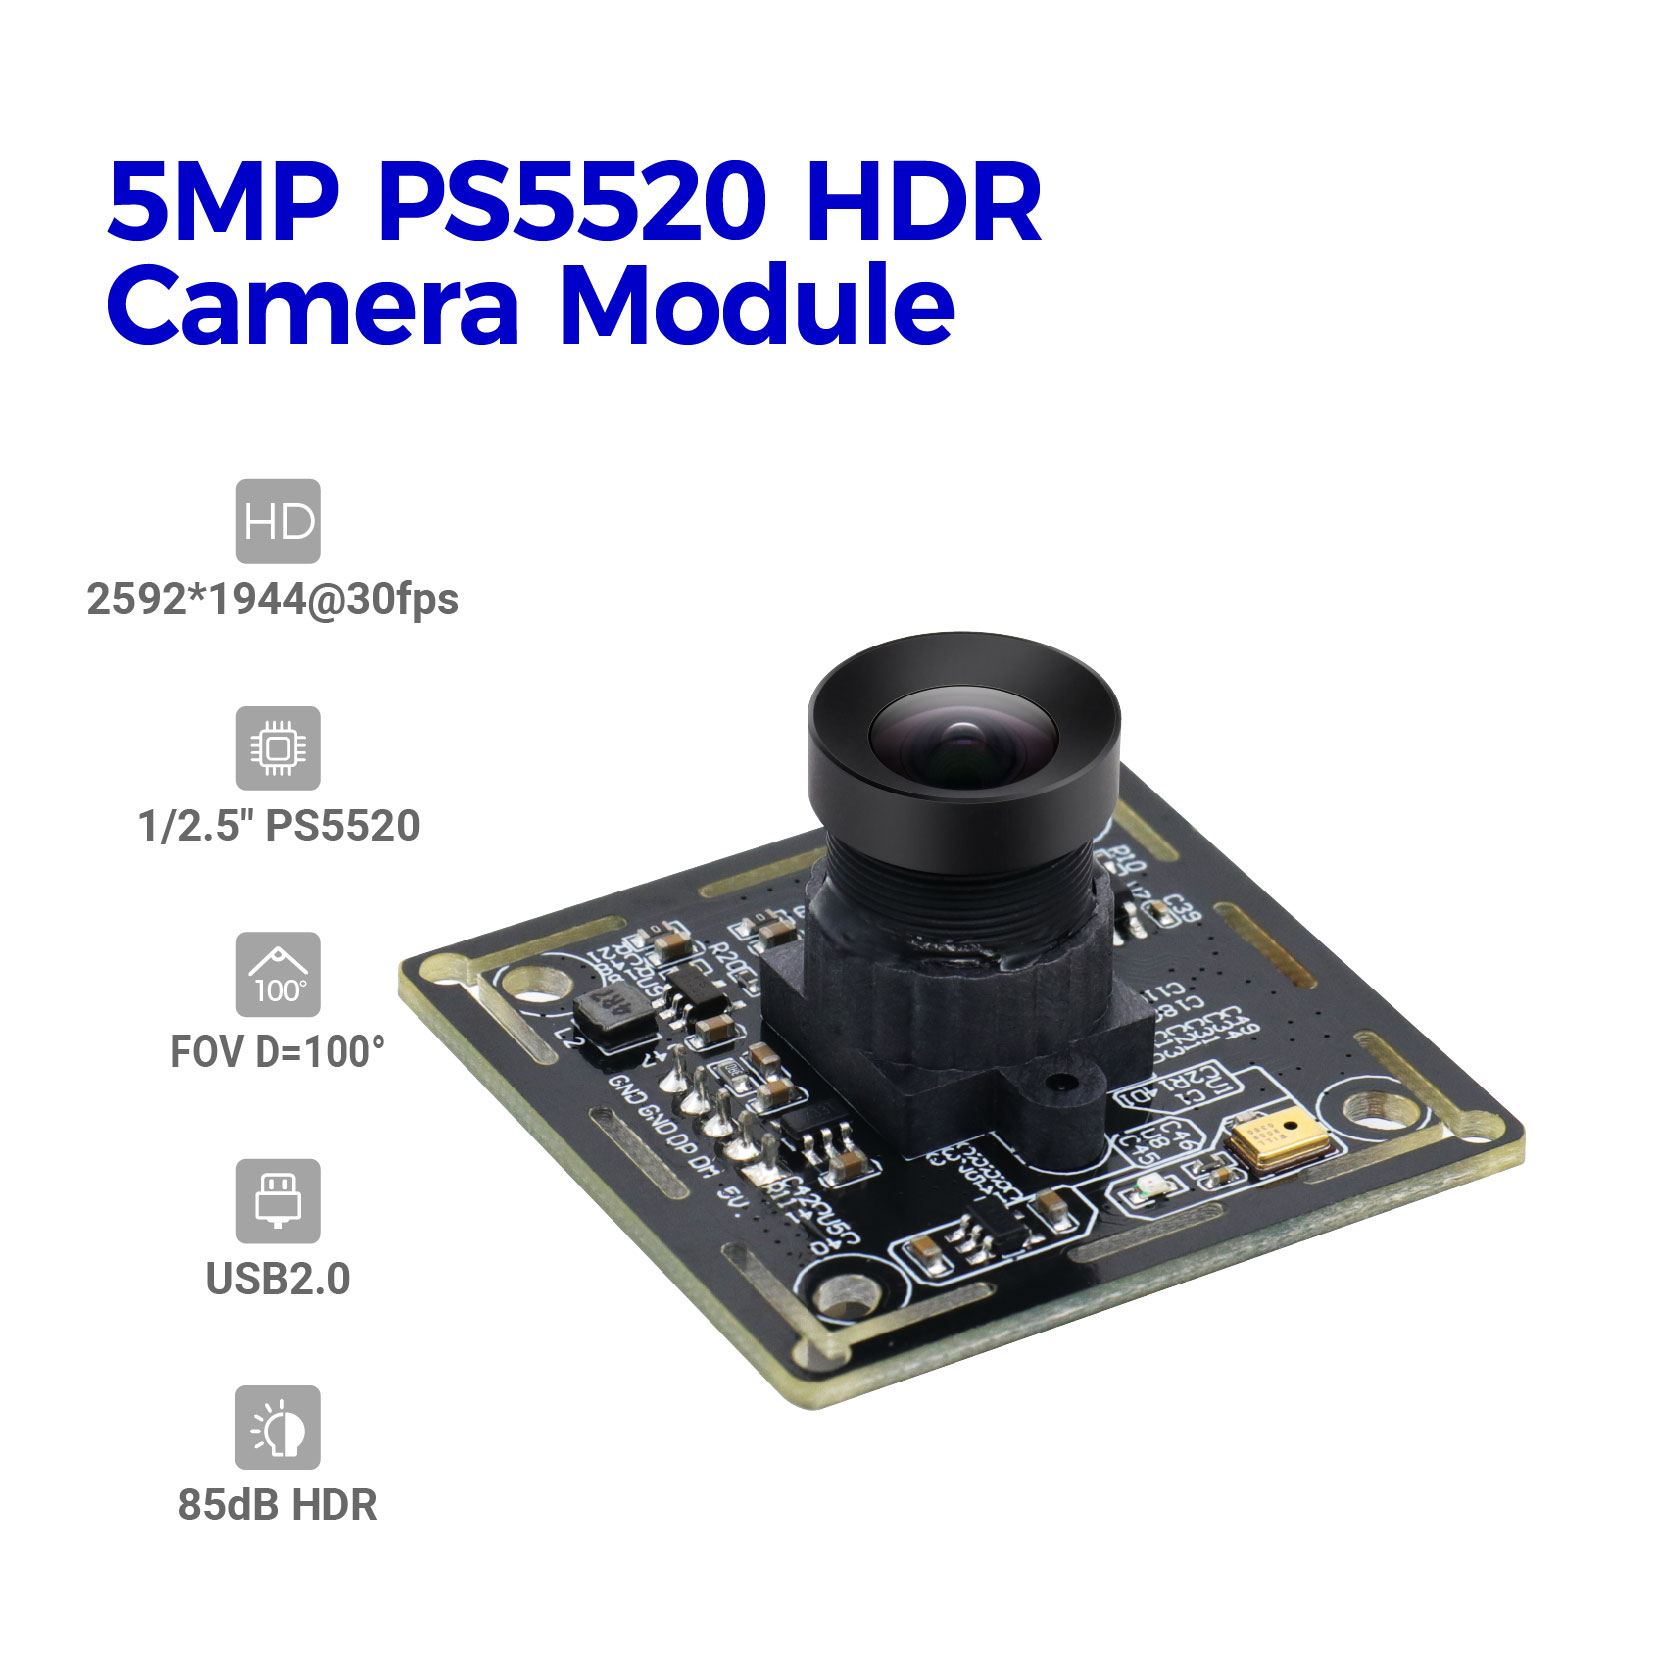 מודול מצלמת PS5520 HDR באיכות גבוהה מותאם אישית